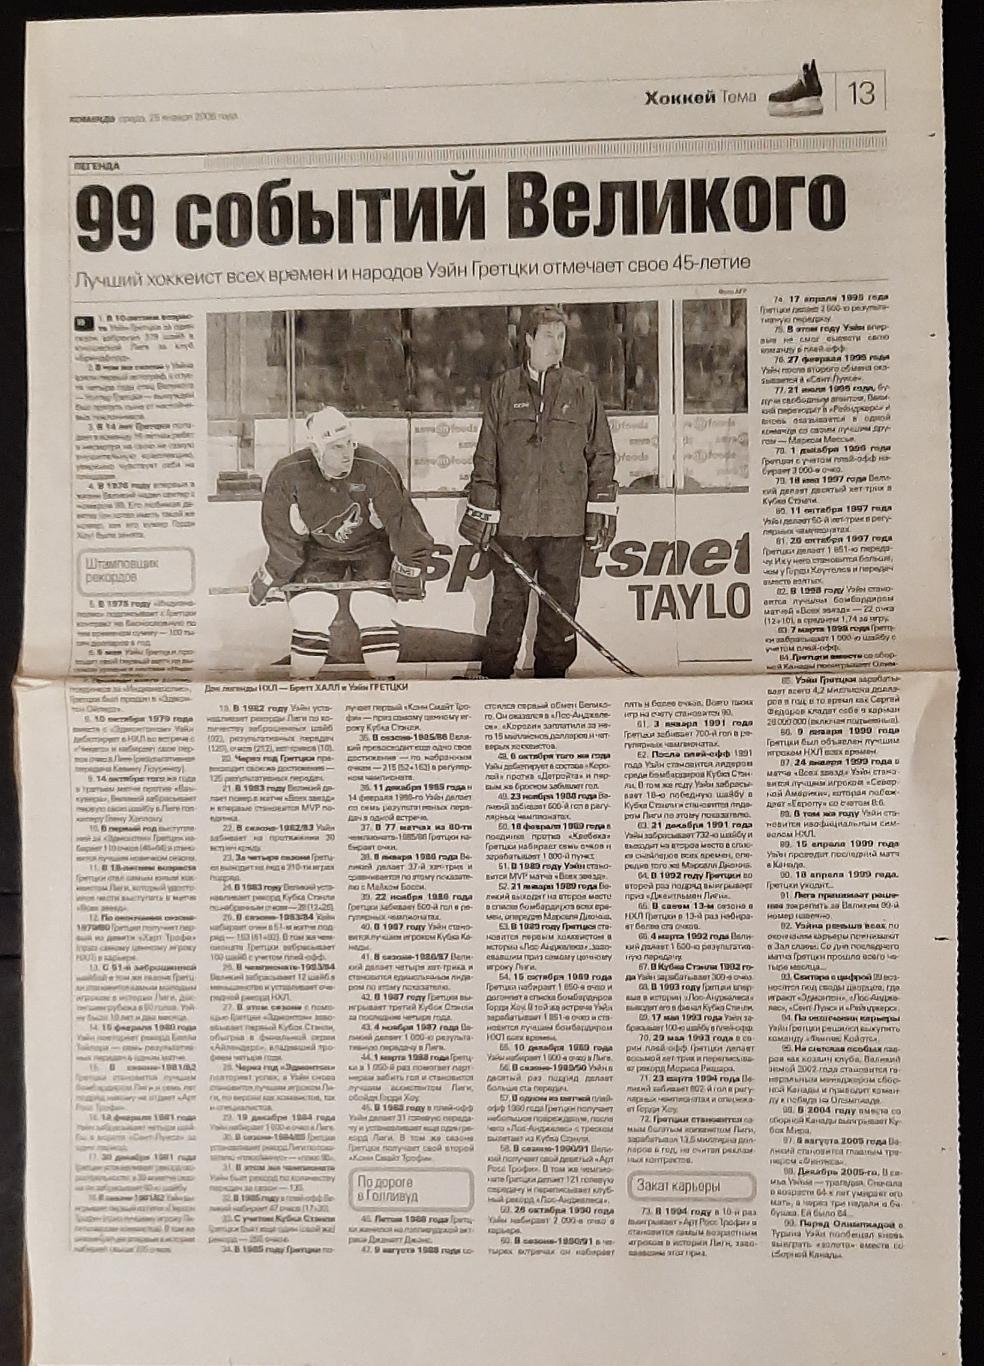 Вирізка з газети Команда (25.01.2006) У.Гретцки